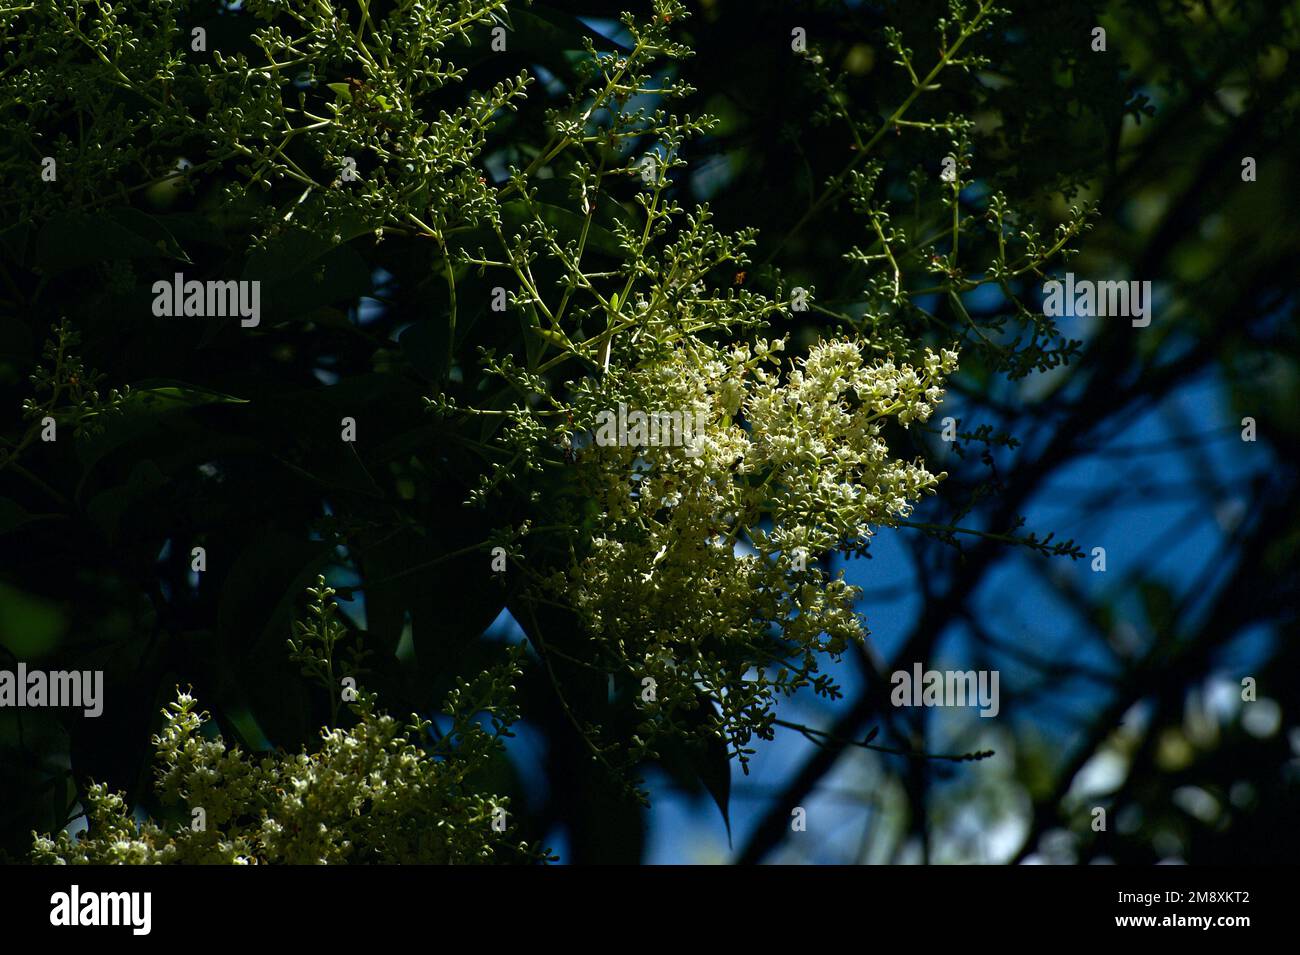 Holunderbeerbäume (Sambucus Nigra) sind europäisch und nicht in Australien heimisch, aber ihre Blüten und ihr Duft sind in unseren Gärten sehr willkommen. Stockfoto